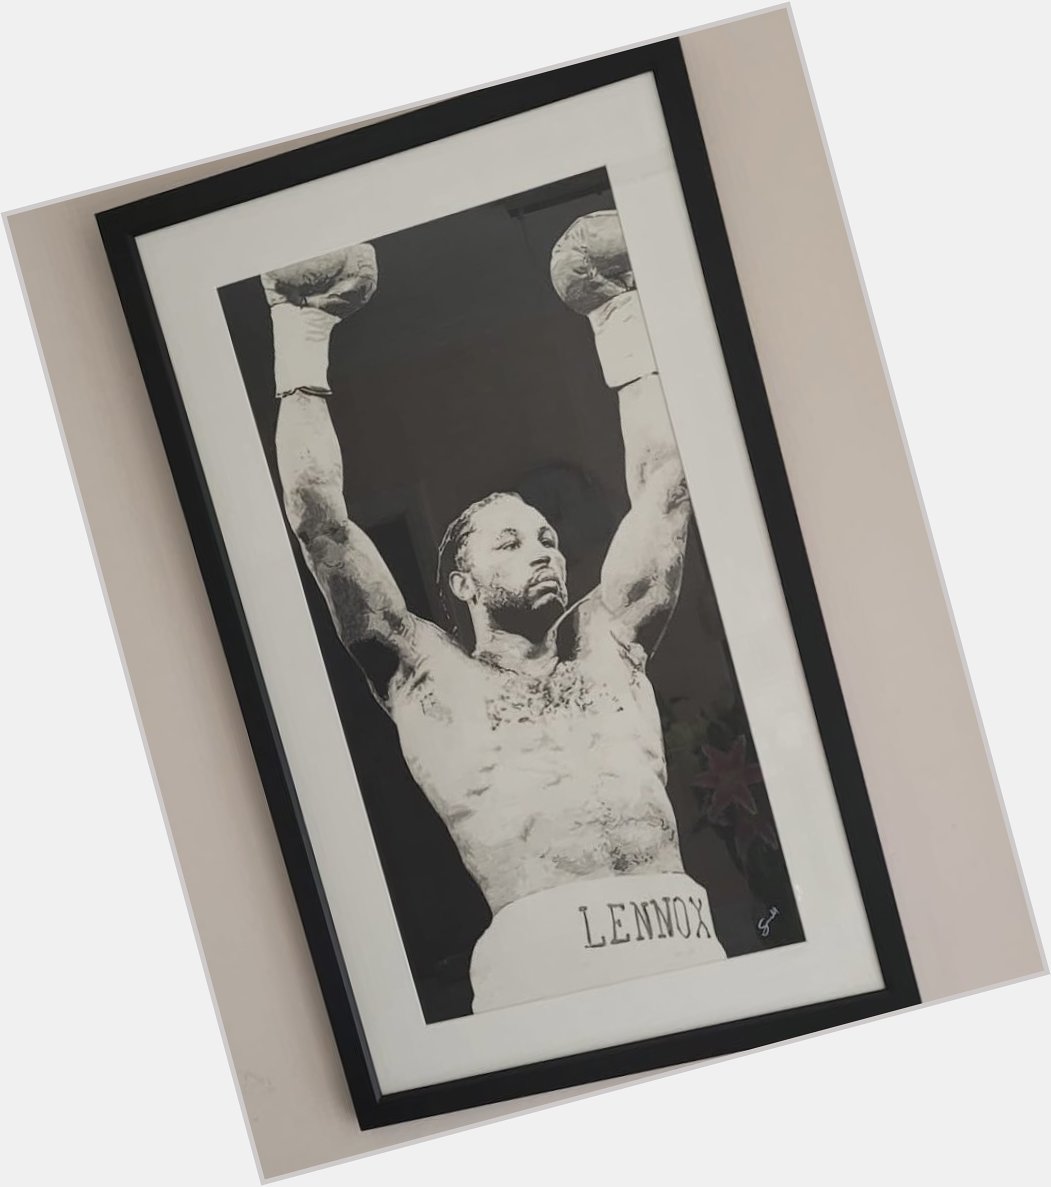 Happy birthday heavyweight legend Lennox Lewis    